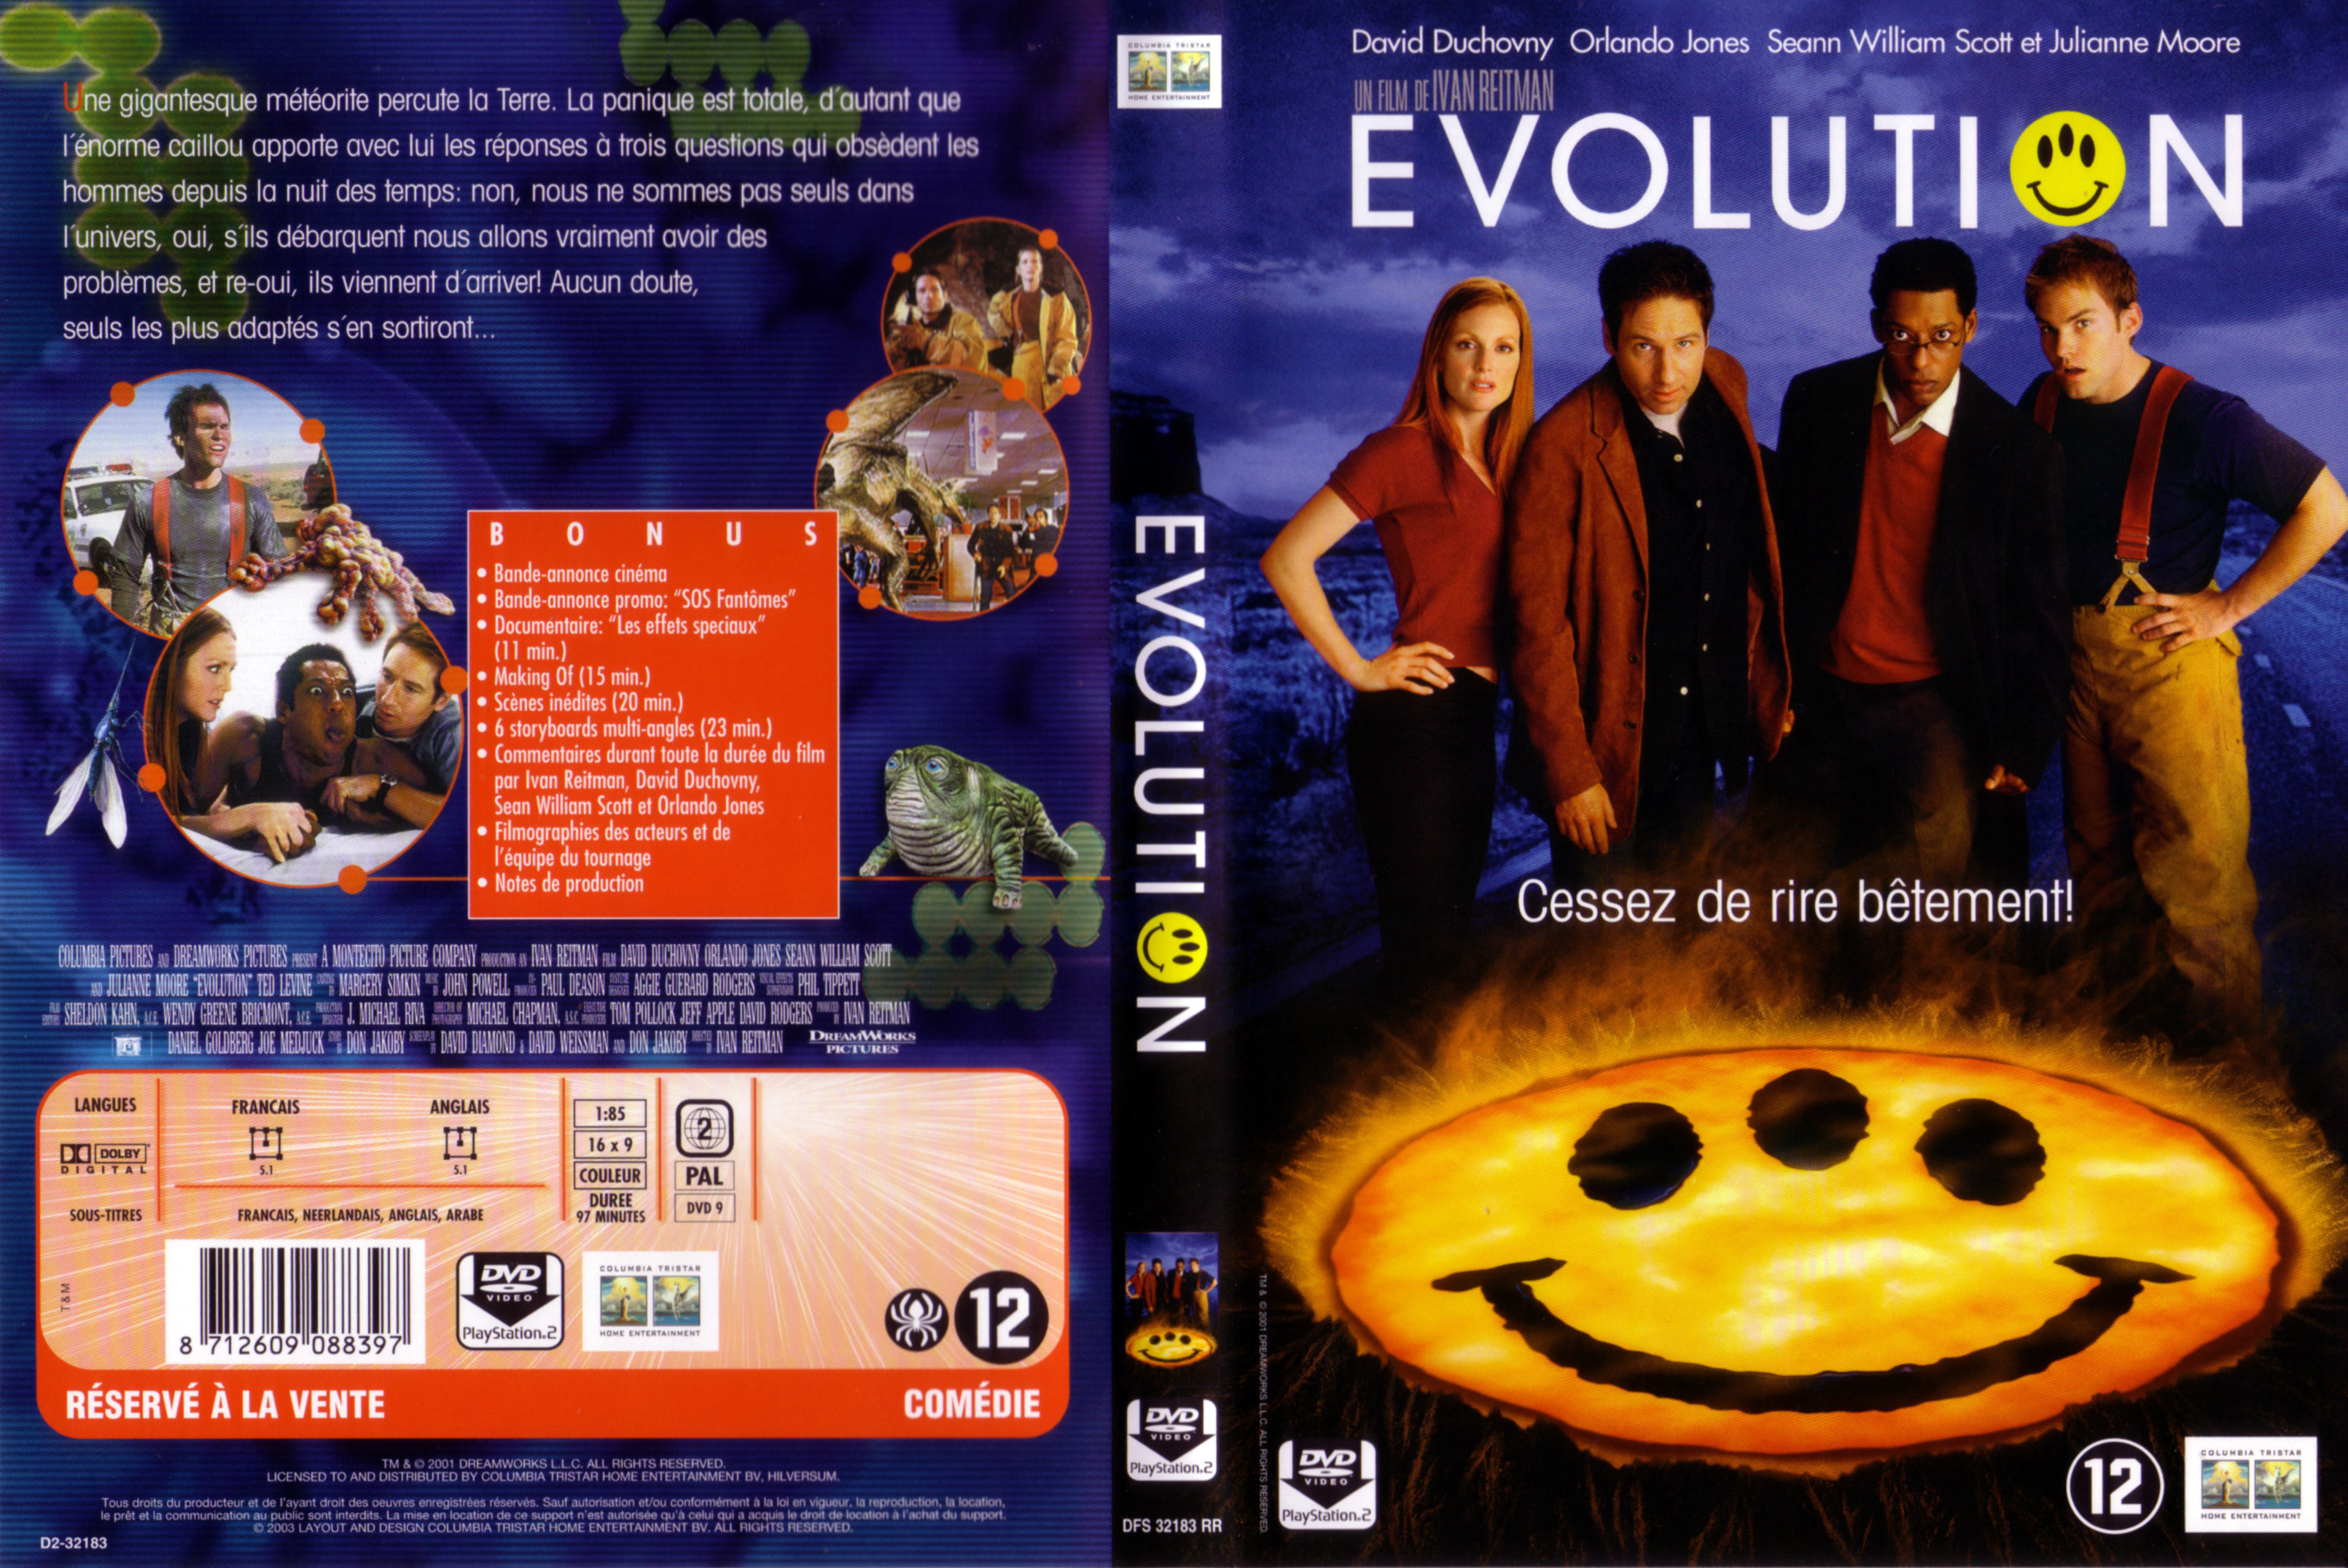 Jaquette DVD Evolution v3